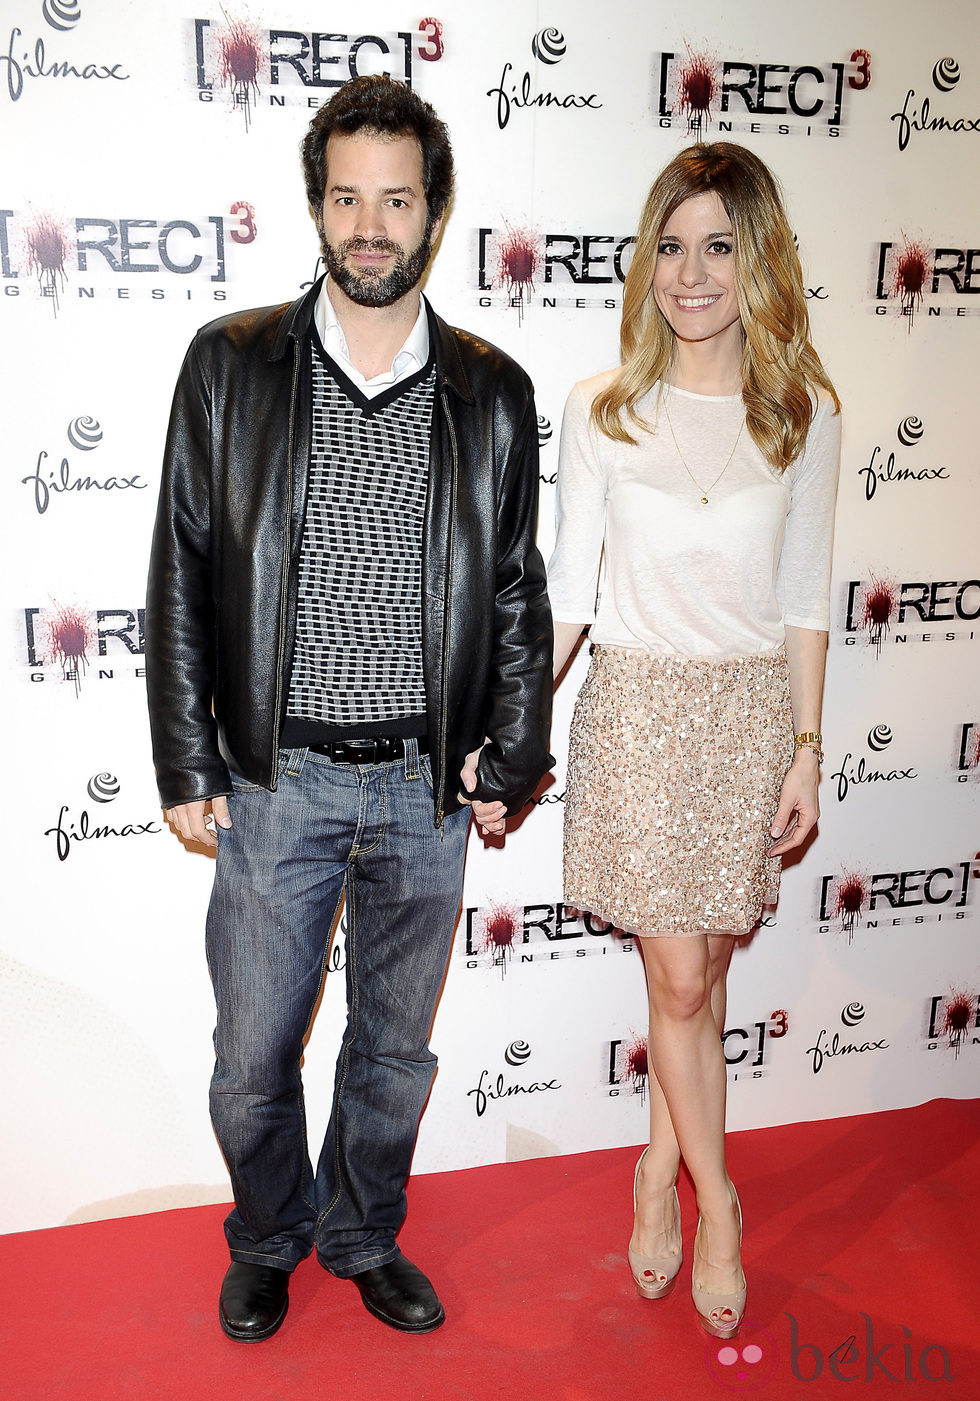 Luis Rallo y Alexandra Jiménez en el estreno de 'REC 3: Génesis'